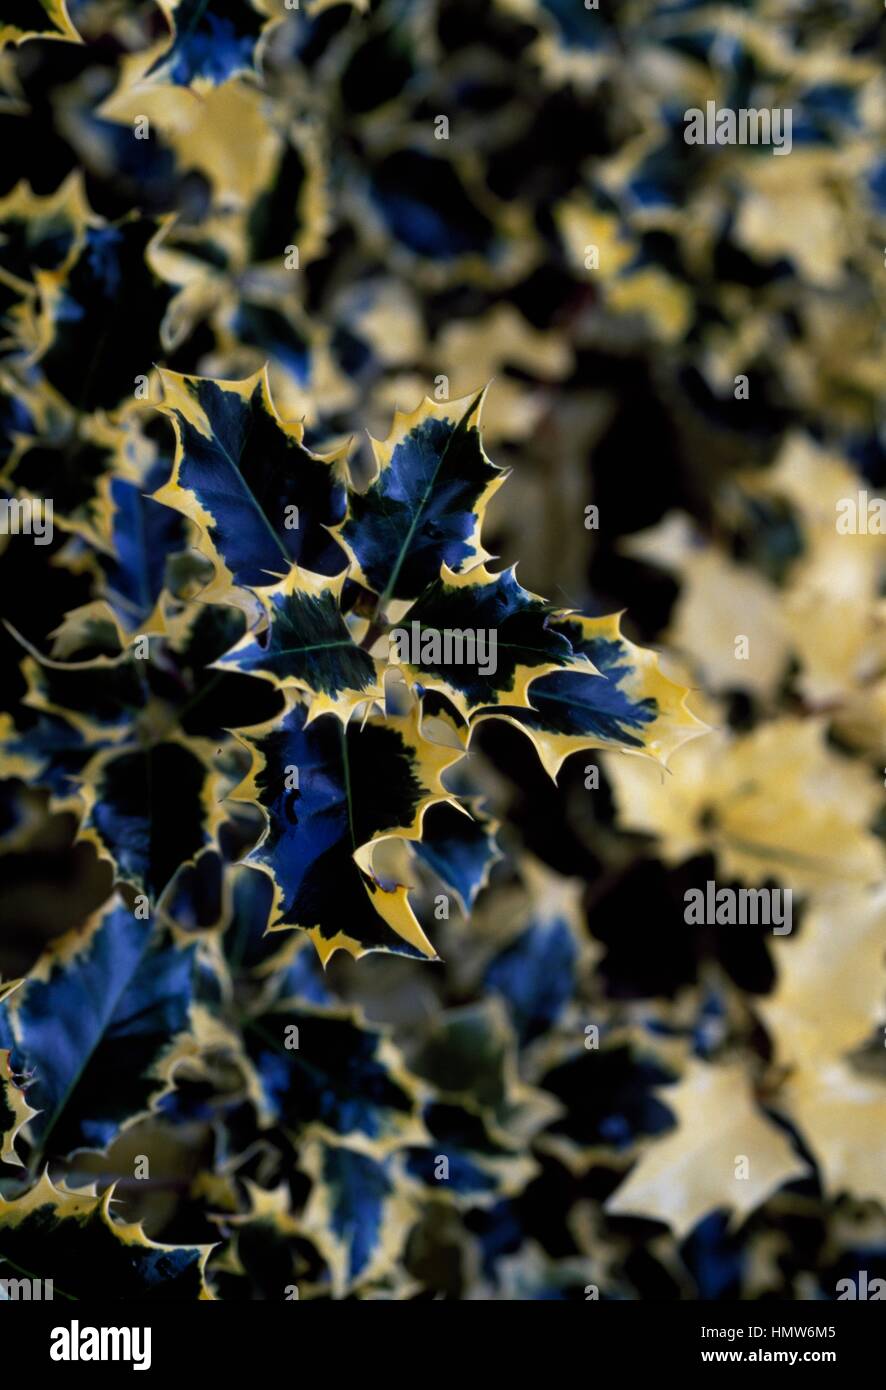 Common Holly (Ilex aquifolium Golden Queen), Aquifoliaceae. Stock Photo